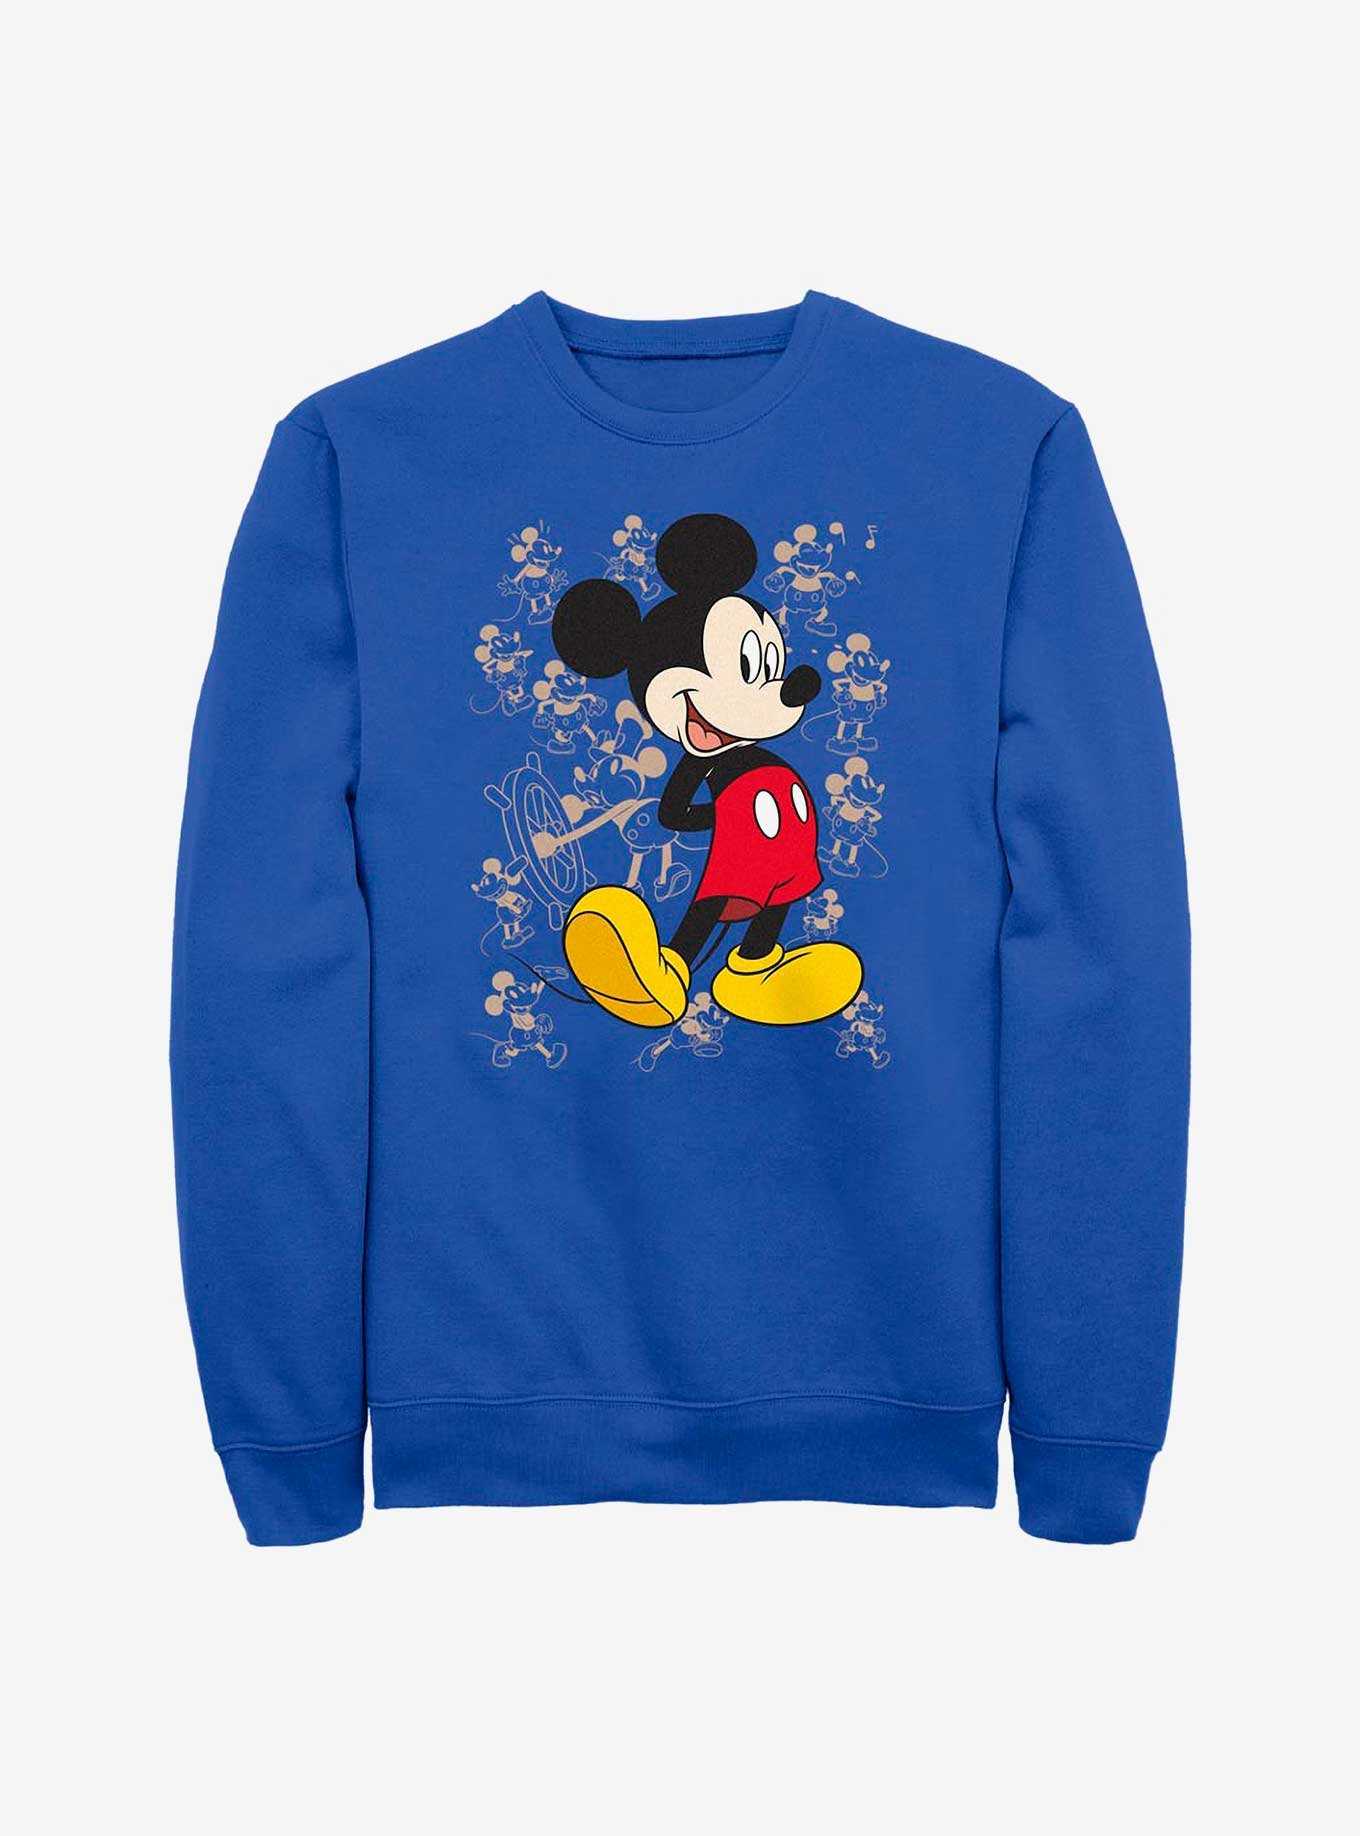 Disney Mickey Mouse Many Mickeys Sweatshirt, , hi-res